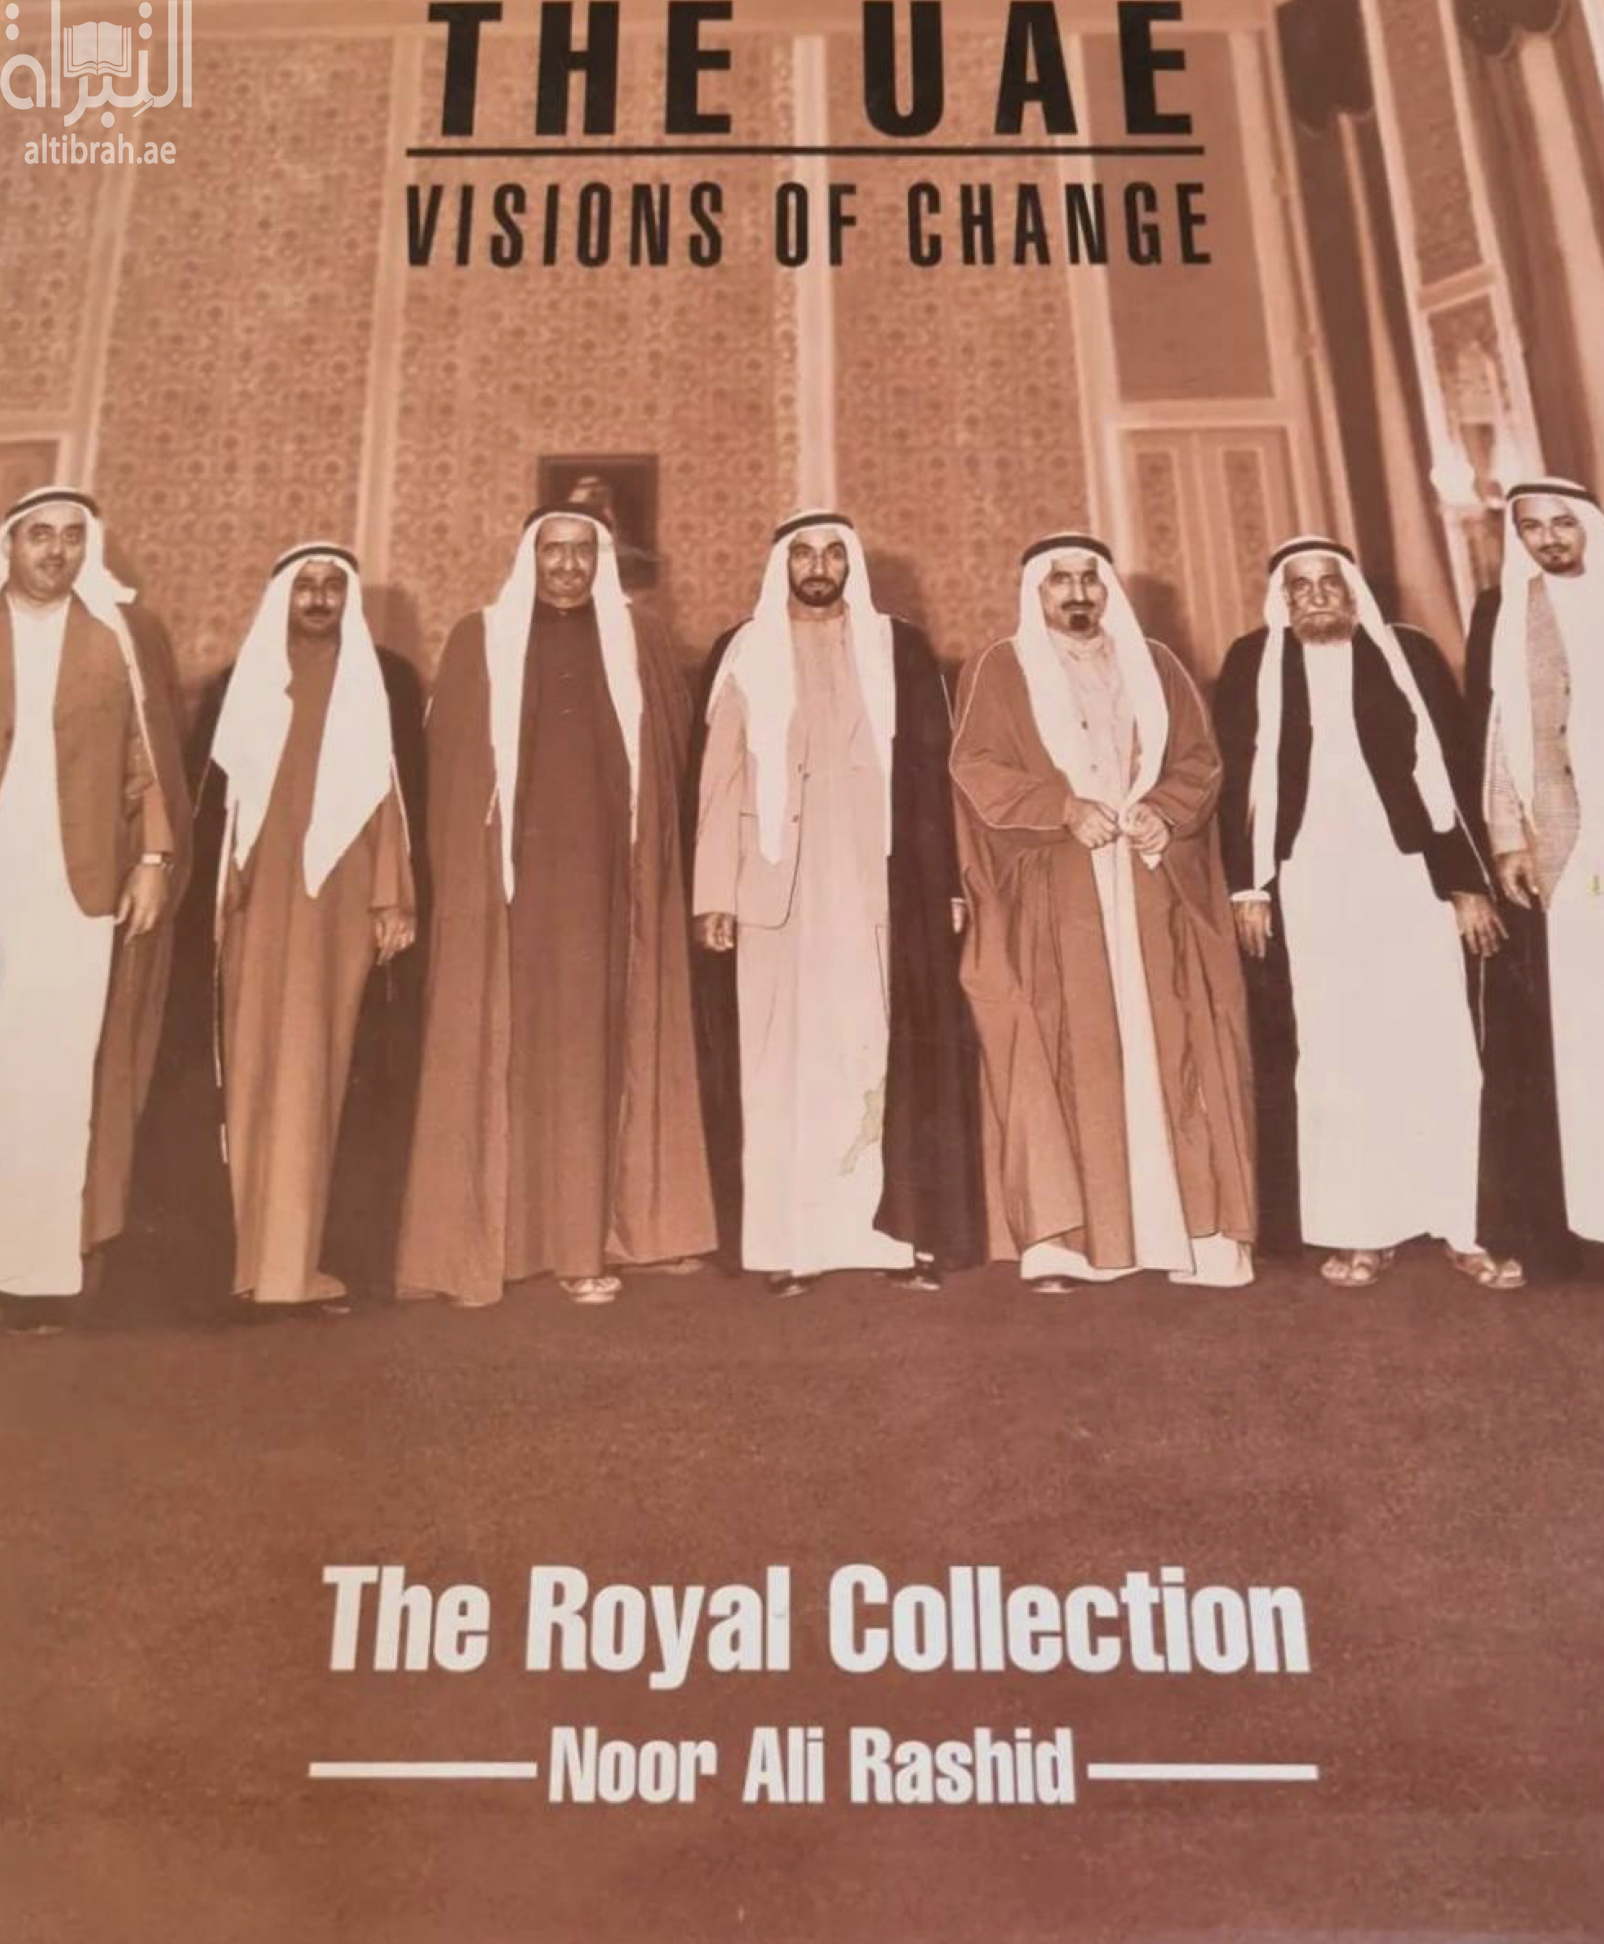 كتاب The UAE : Visions of change : The Royal Collection